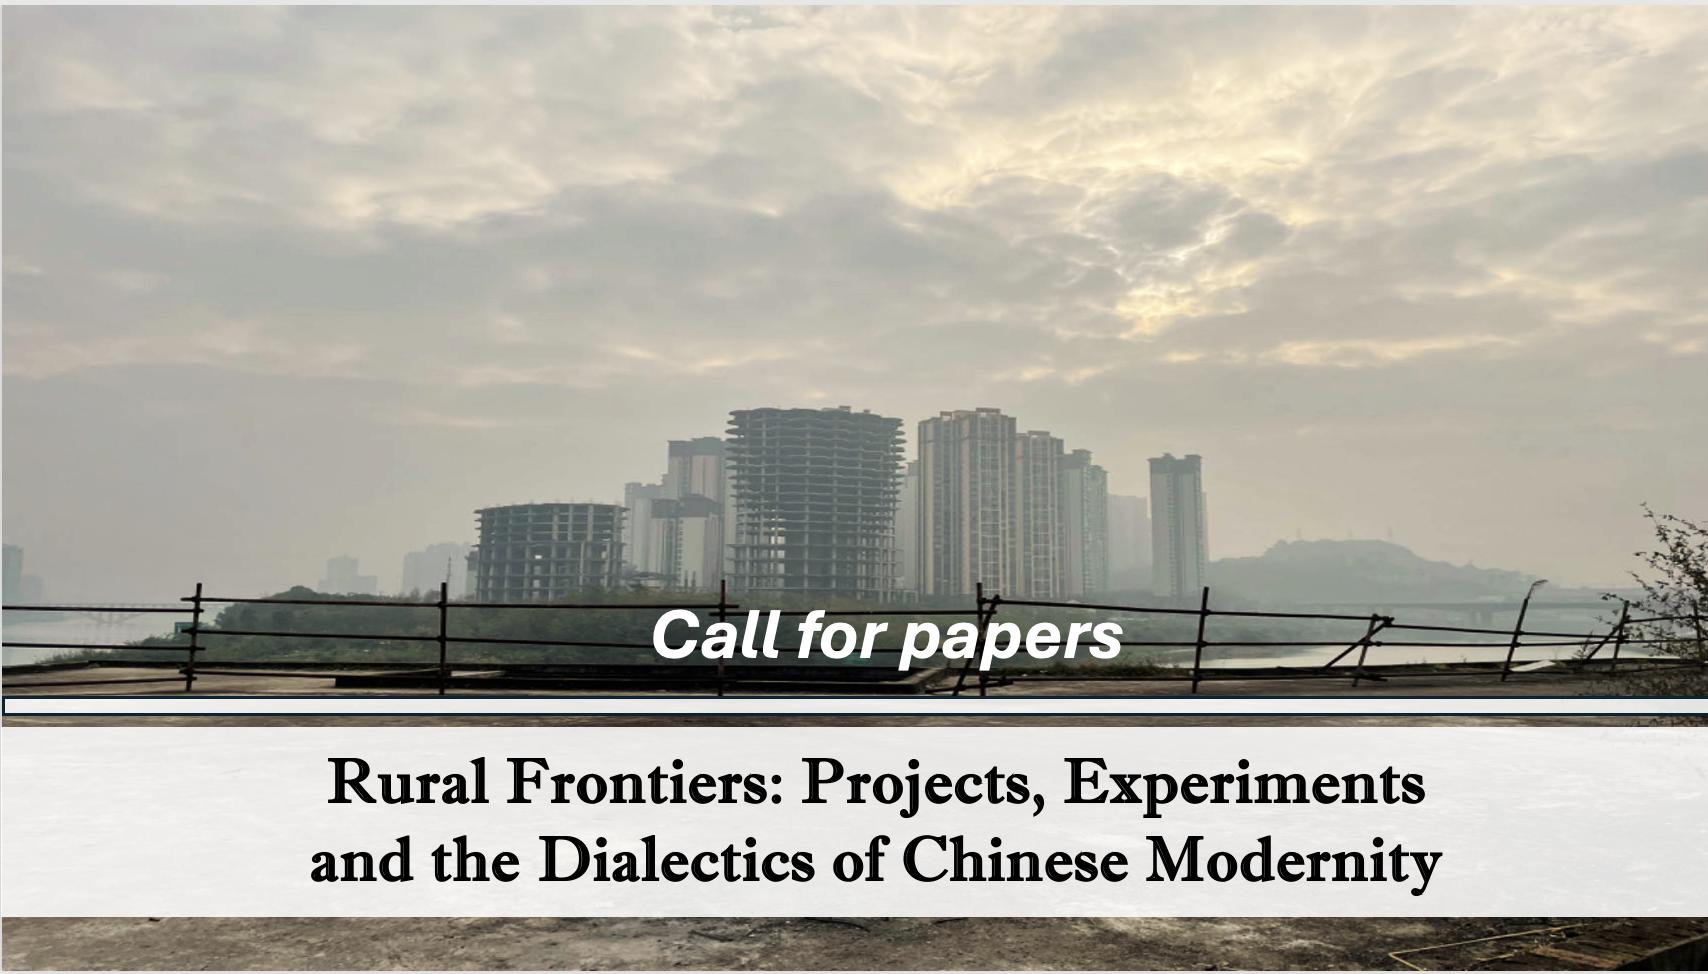 徵集論文： Special Issue/Edited Volume “Rural Frontiers: Projects, Experiments, and the Dialectics of Chinese Modernity”